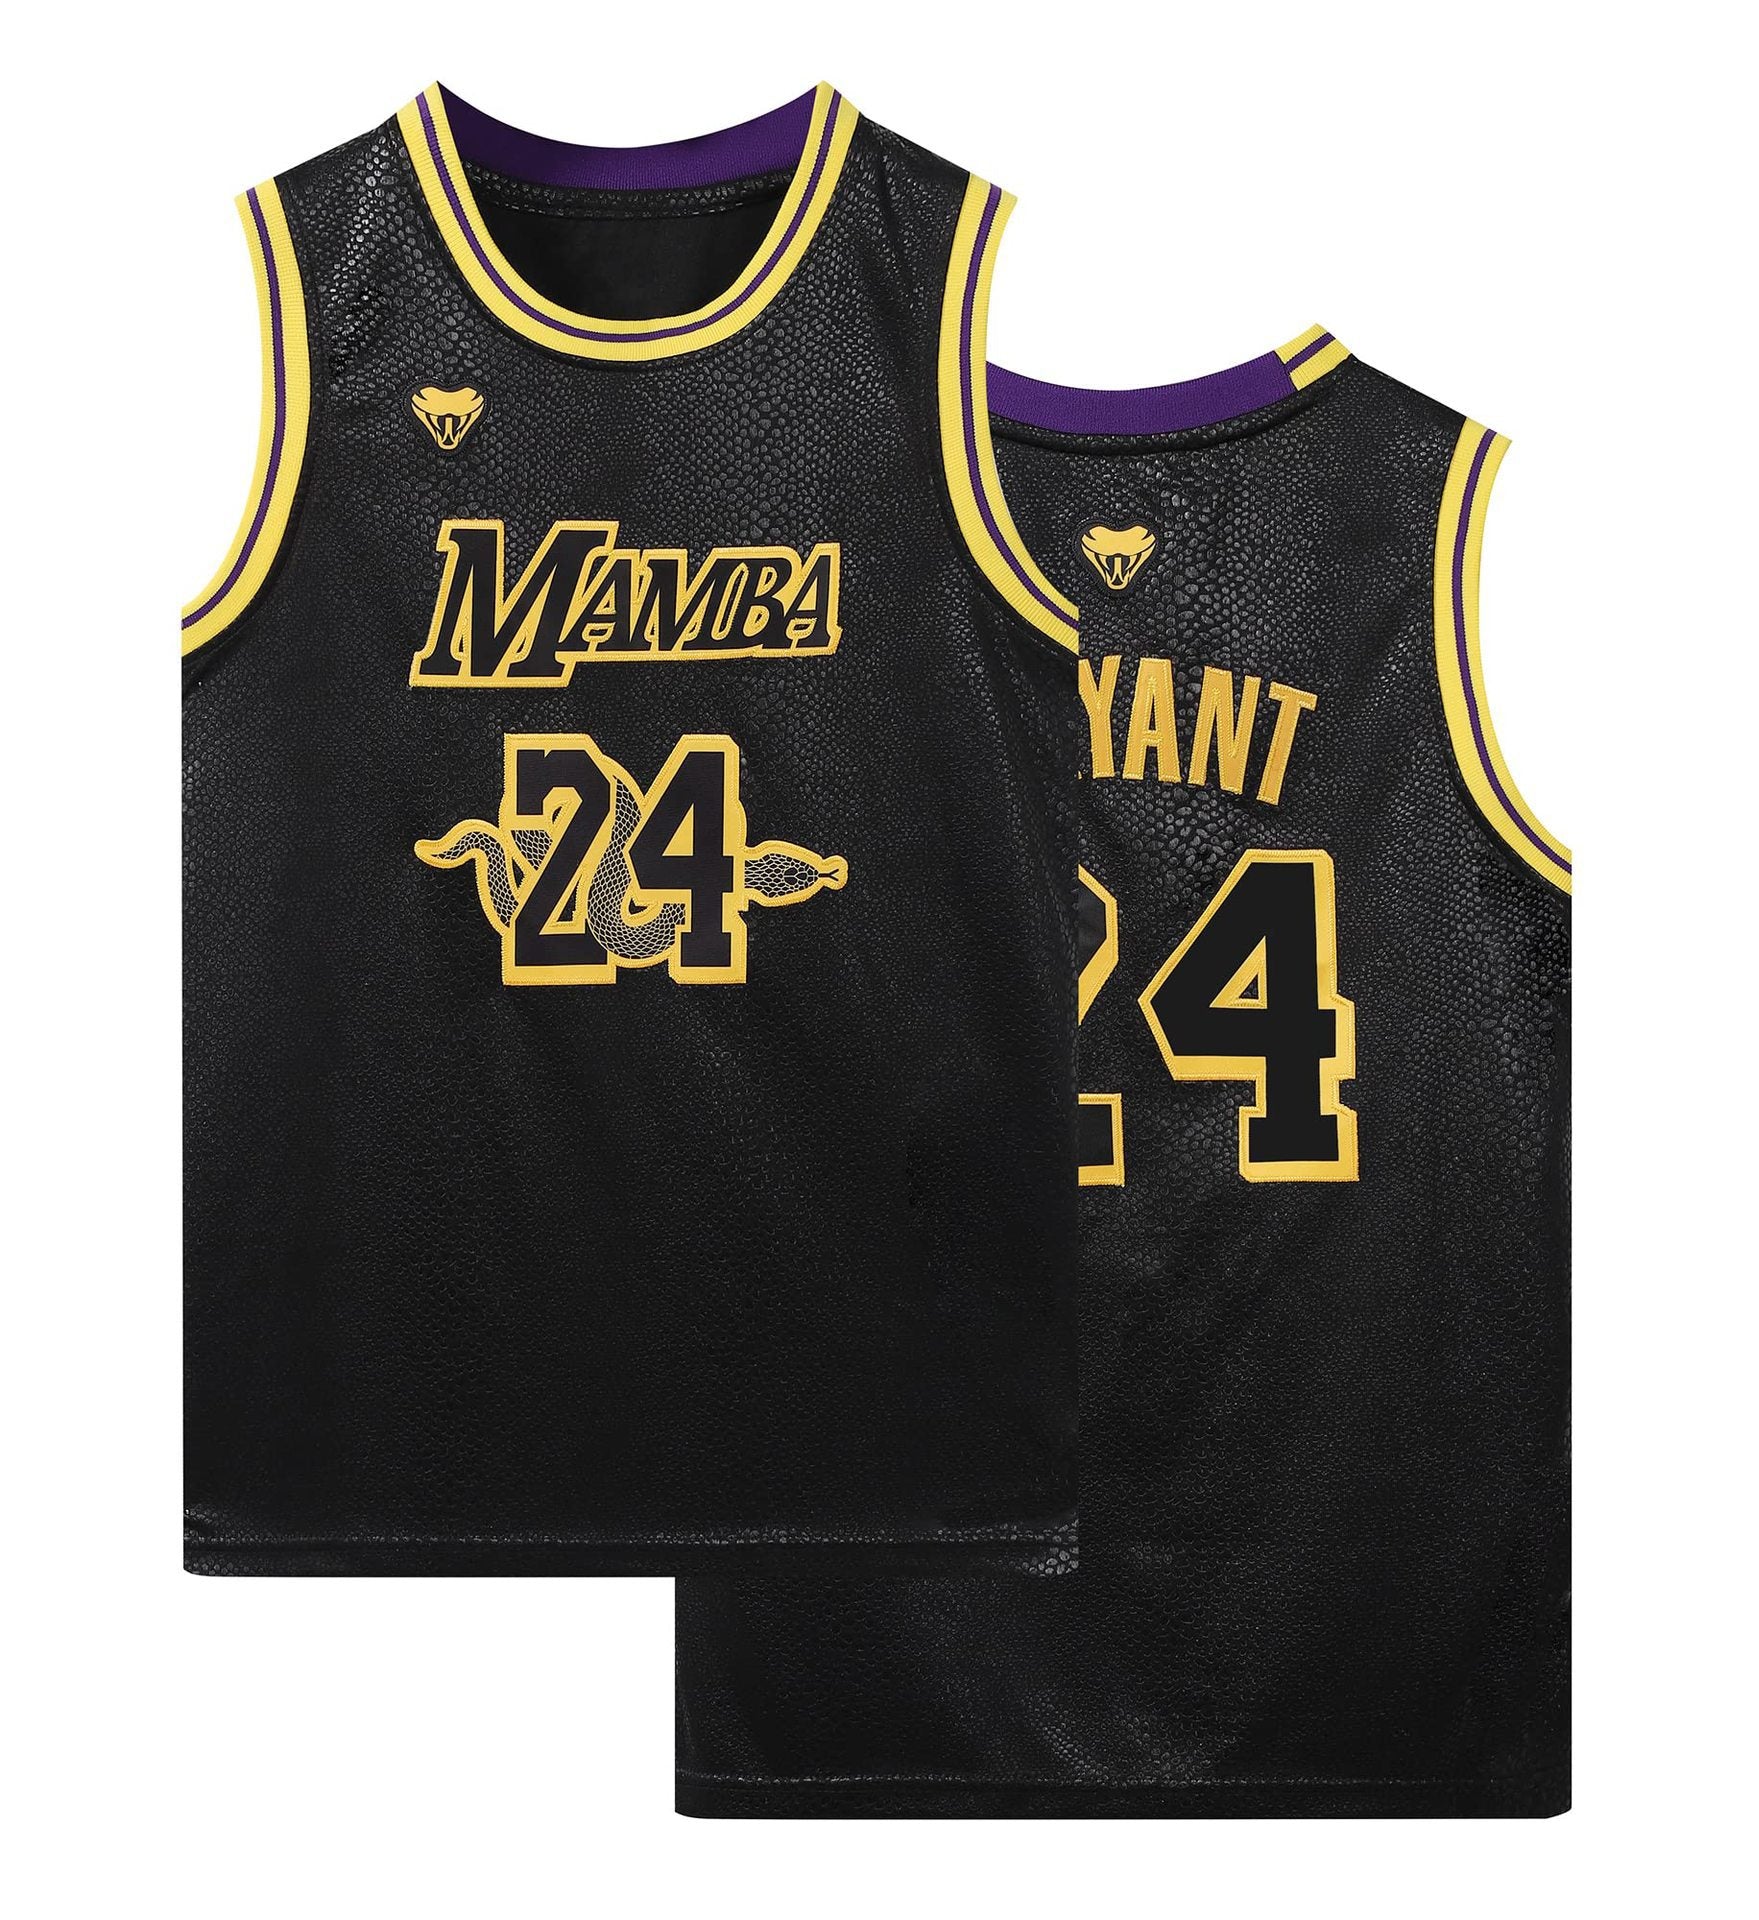 Mamba Kobe Bryant Jersey #24 #8 Basketball Jersey – BuyMovieJerseys